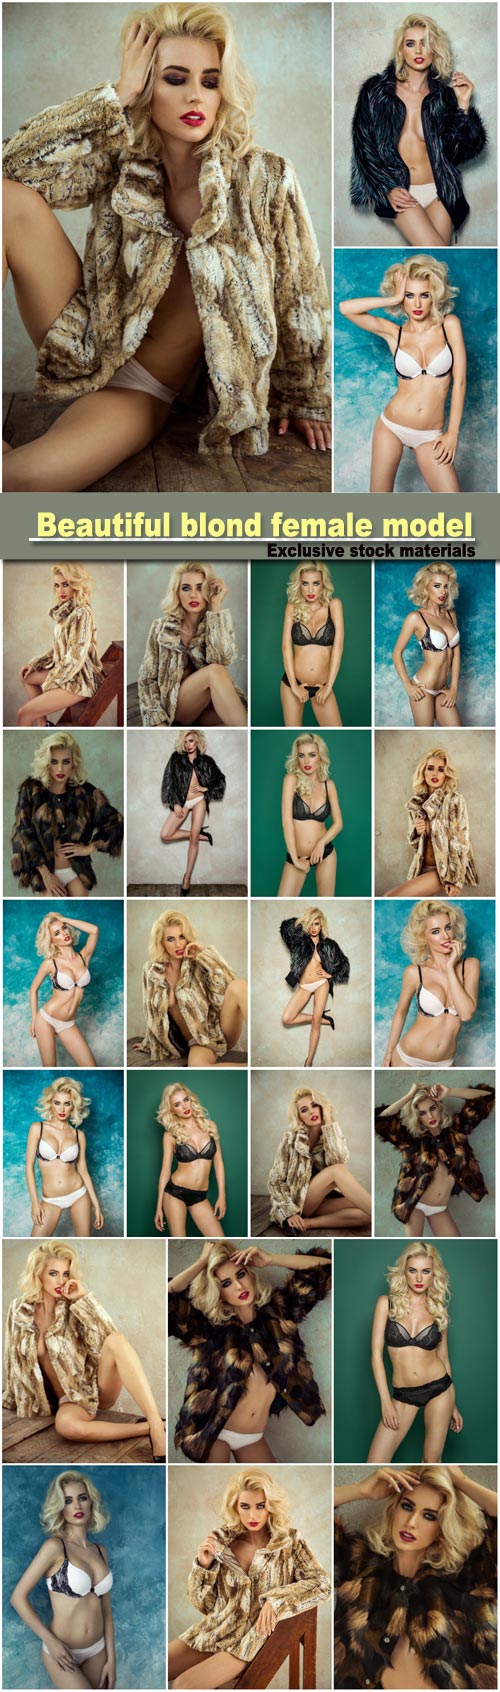 Beautiful blond female model wear fur, sexy female model posing in lingerie